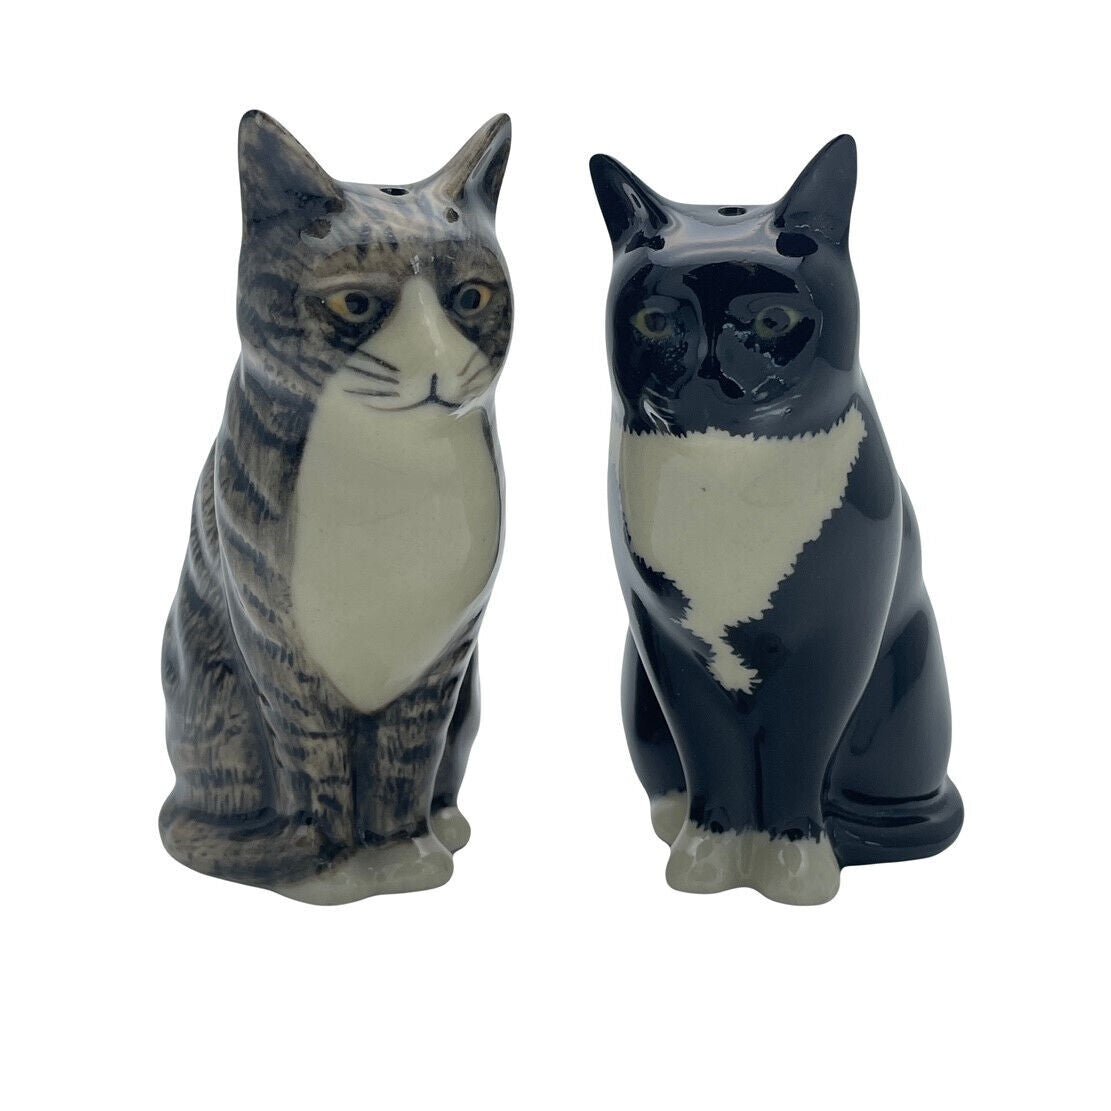 Millie & Julius Cat Salt & Pepper Shakers by Quail Ceramics